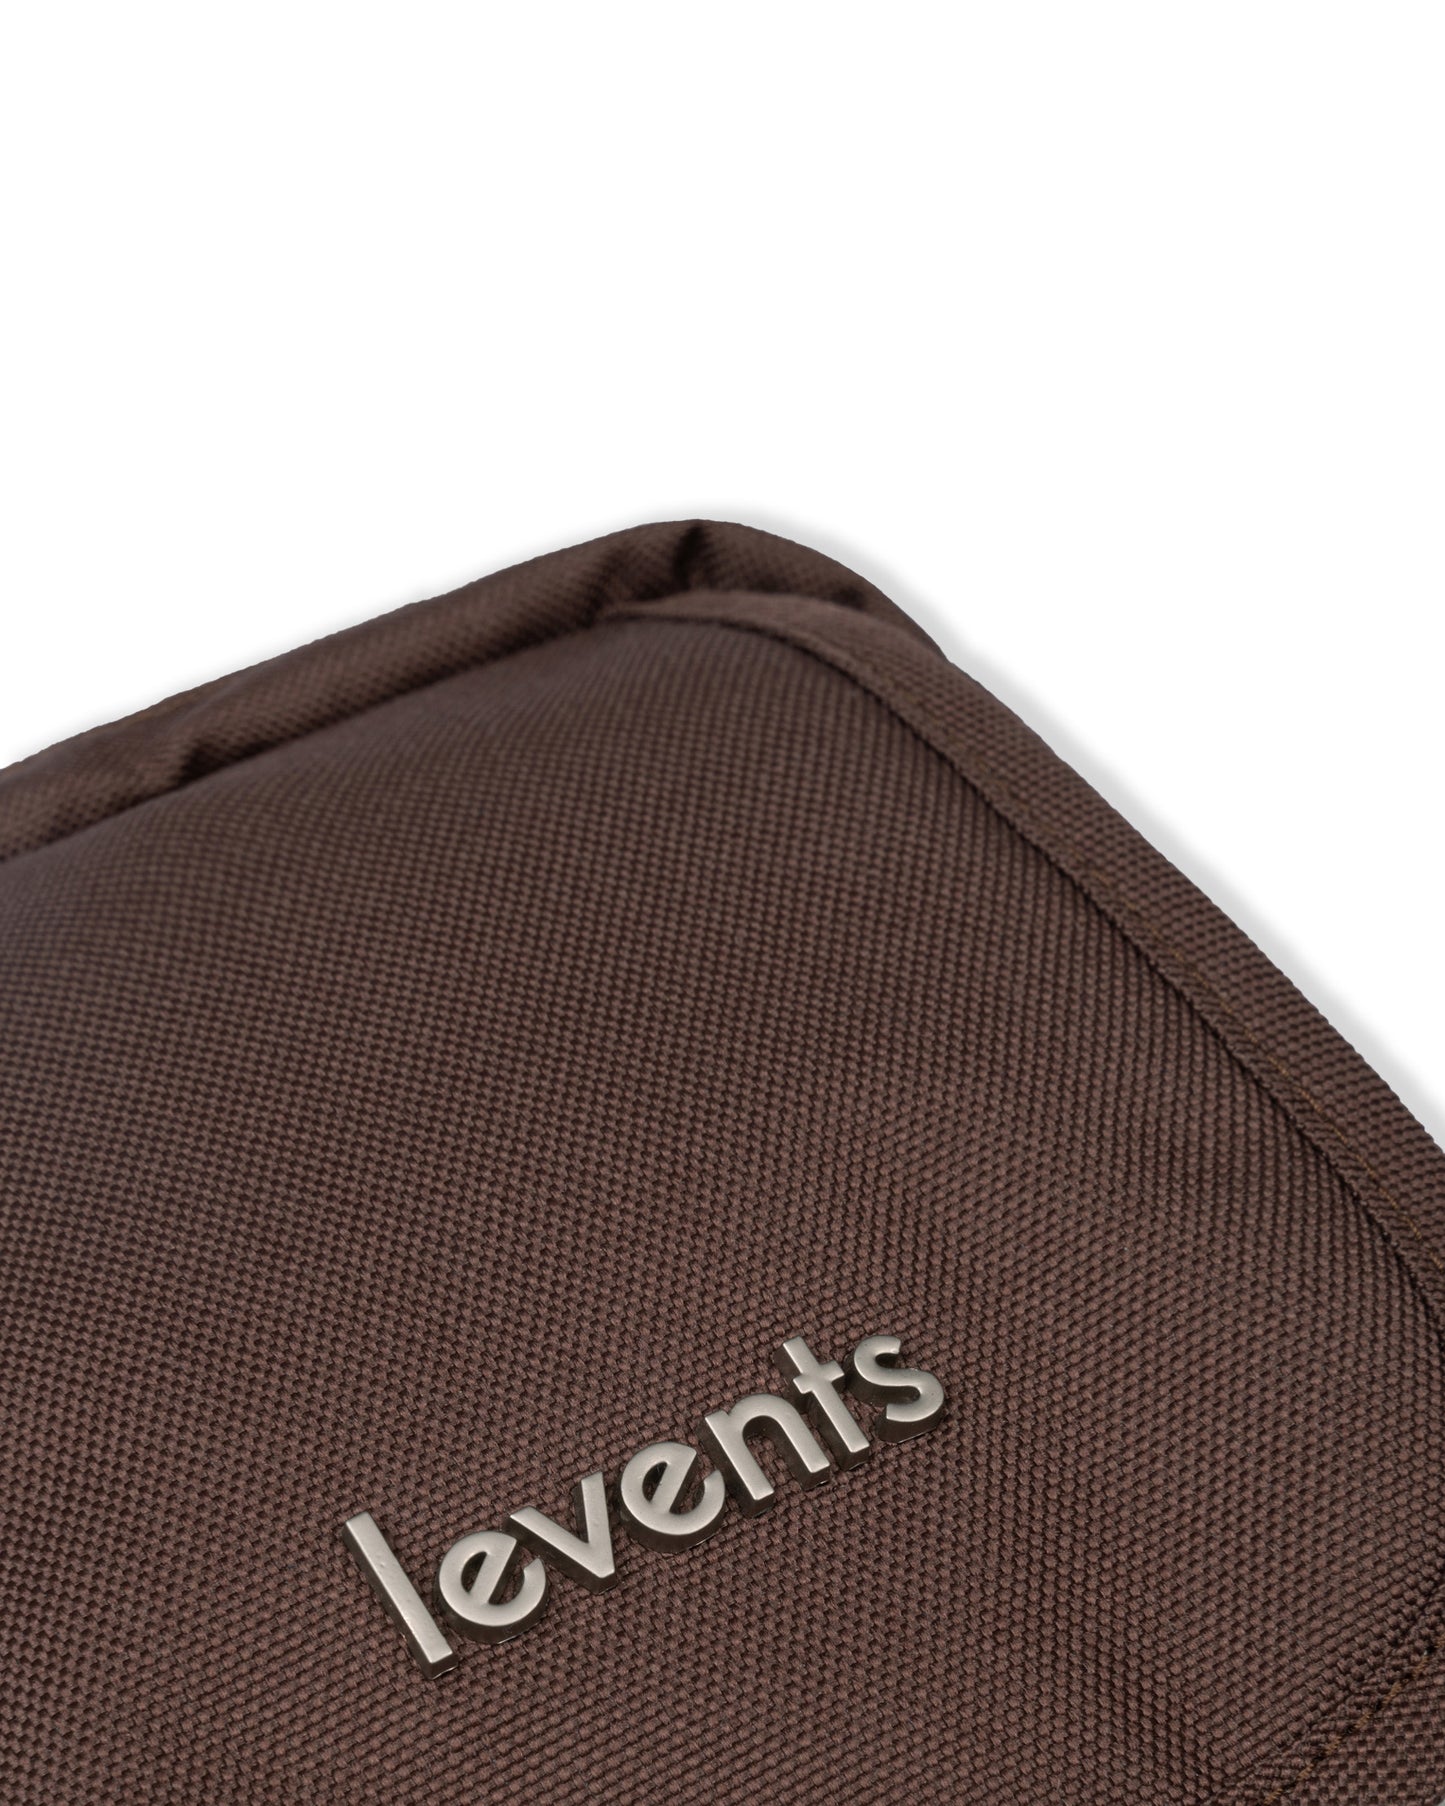 Levents® 2Tone Mini Shoulder Bag/ Brown Cream